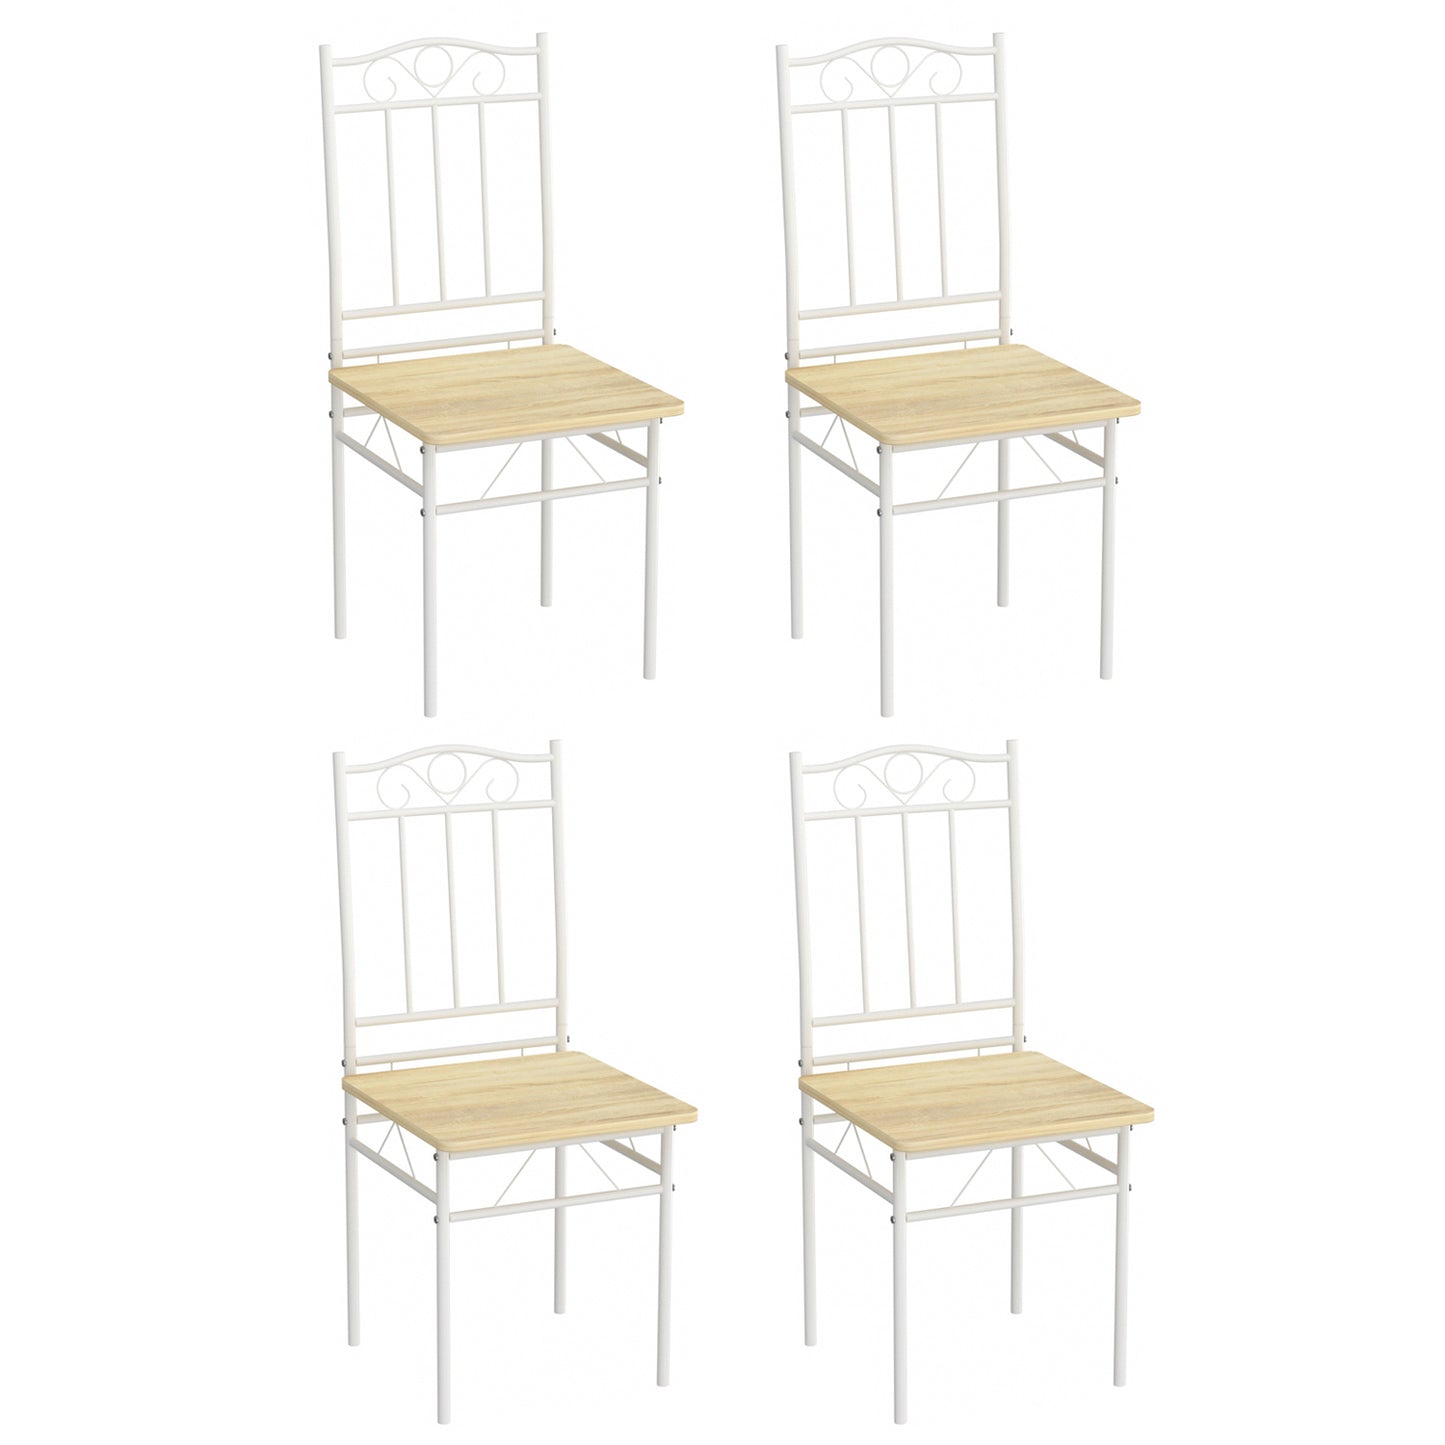 Lot de 4 chaises en hêtre clair avec pieds en fer blanc de style industriel, adaptées pour cuisine, salle à manger, salon